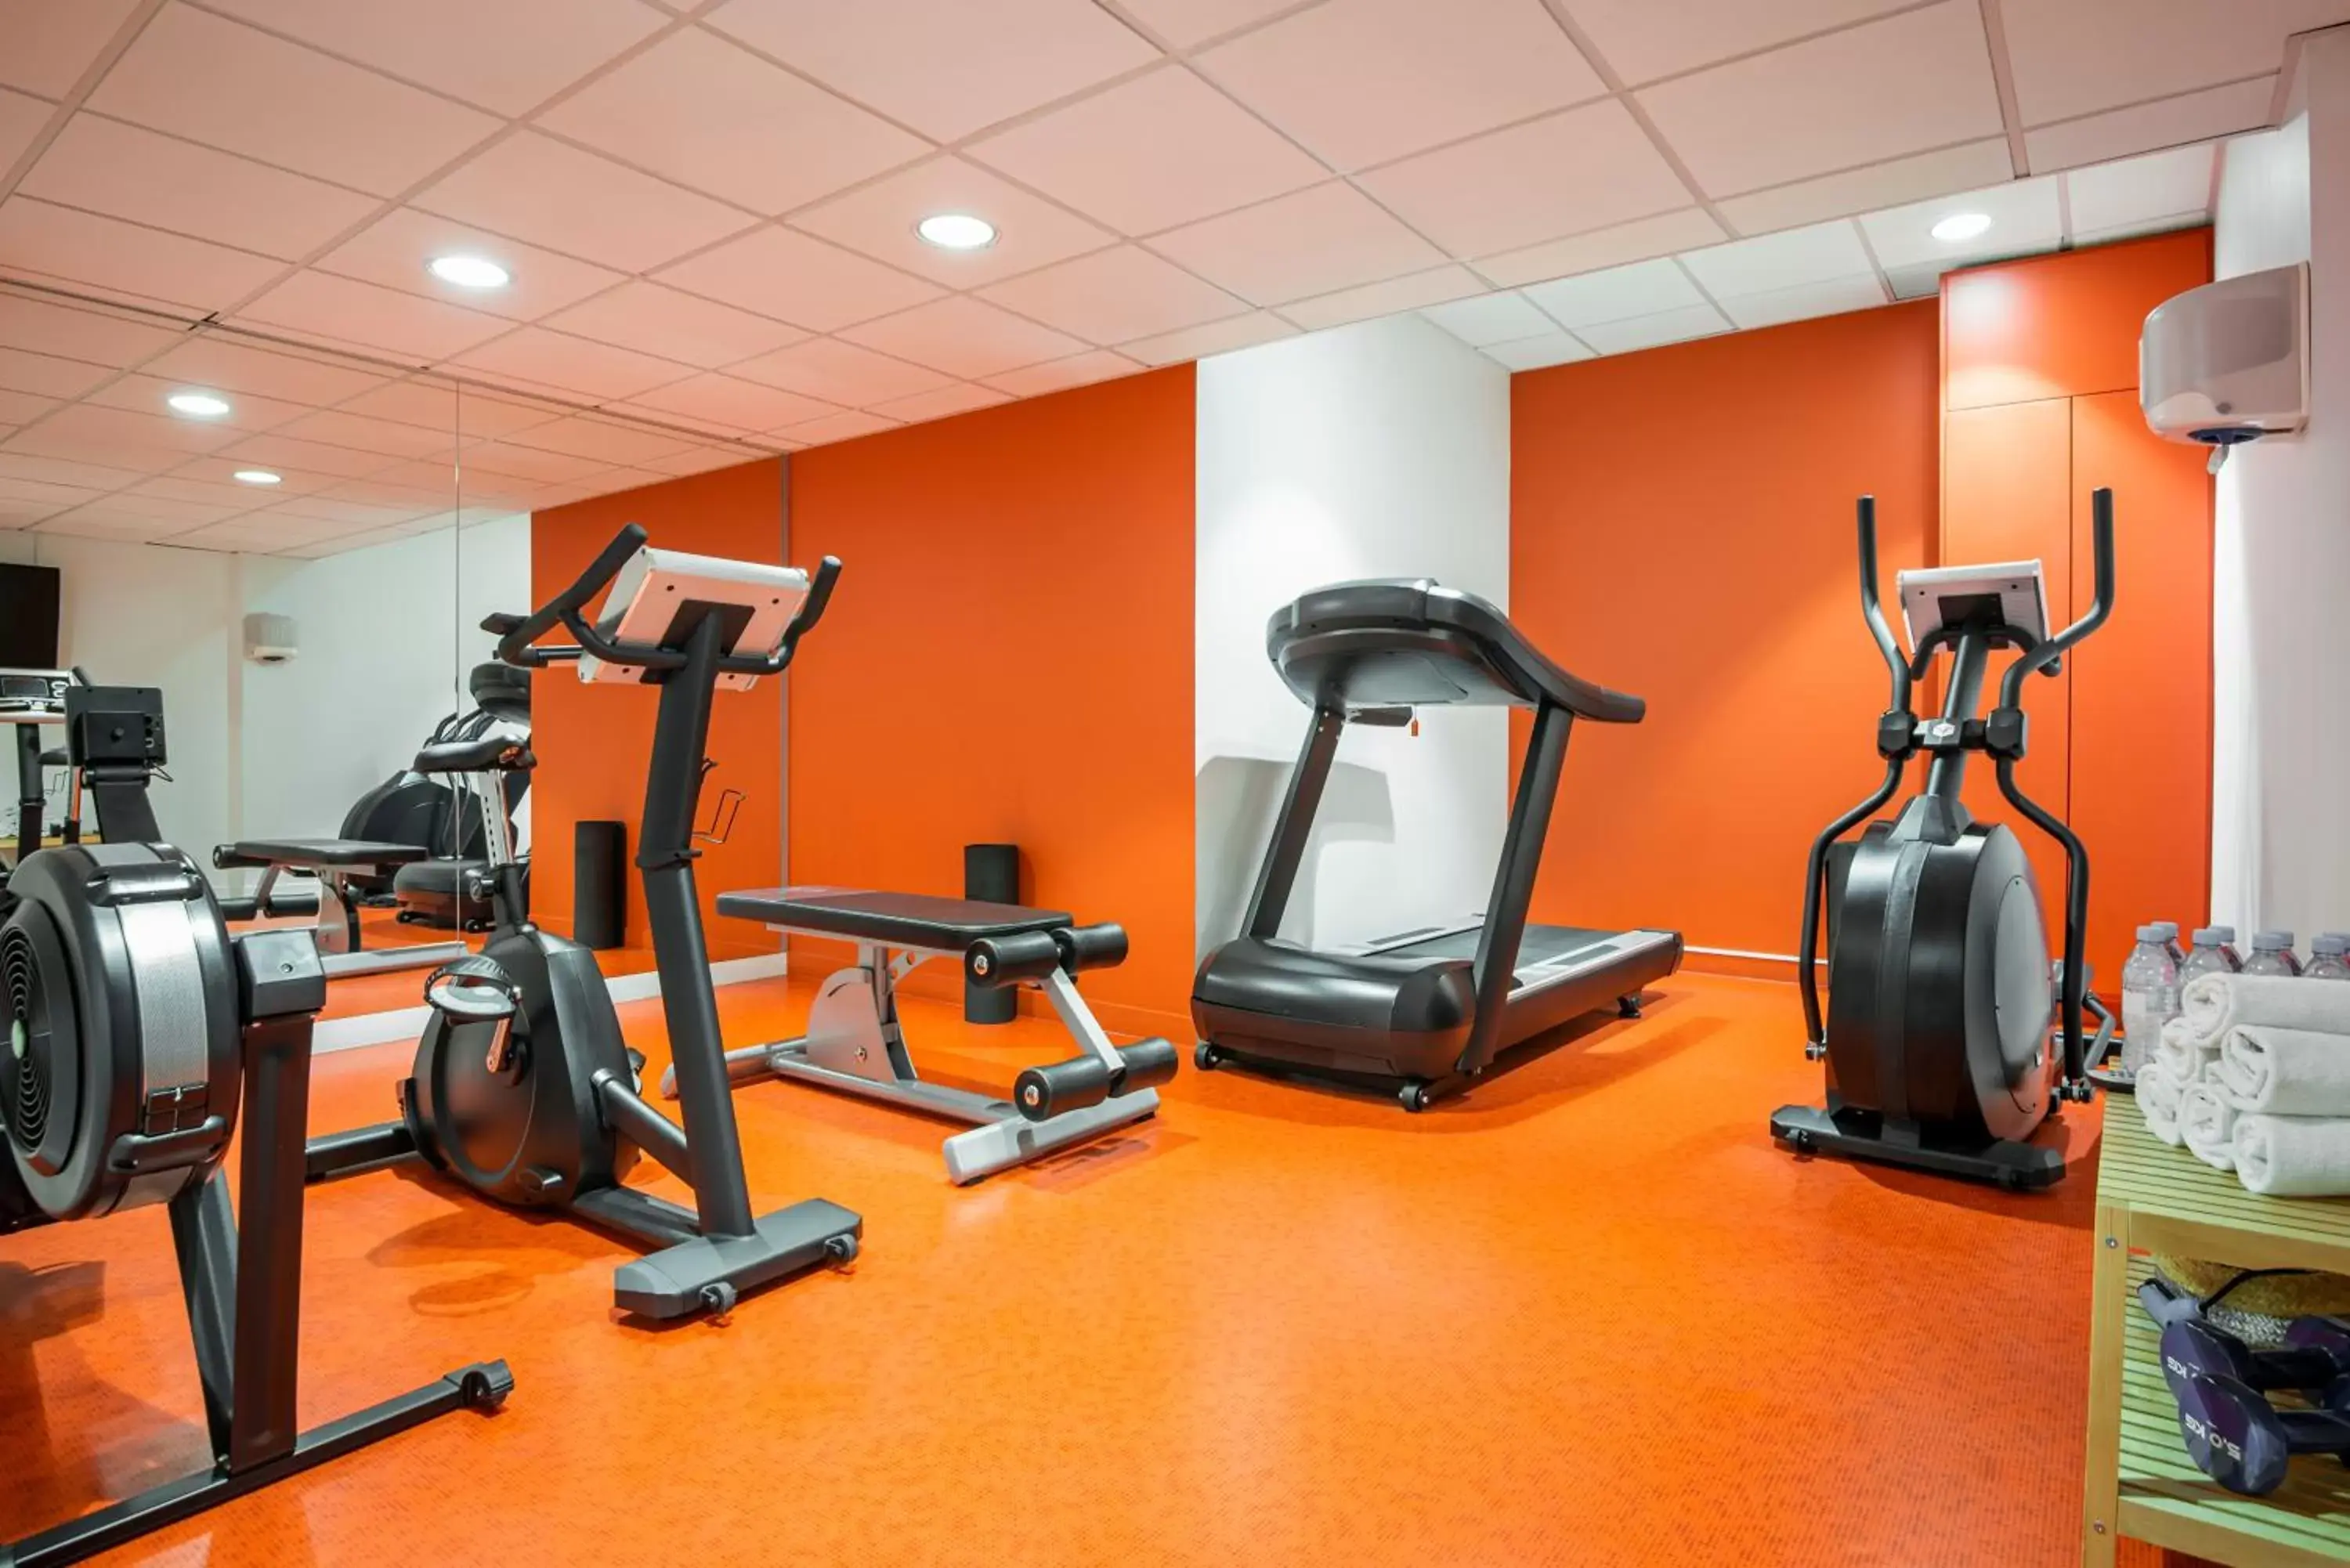 Fitness centre/facilities, Fitness Center/Facilities in Aparthotel Adagio Paris Bercy Village